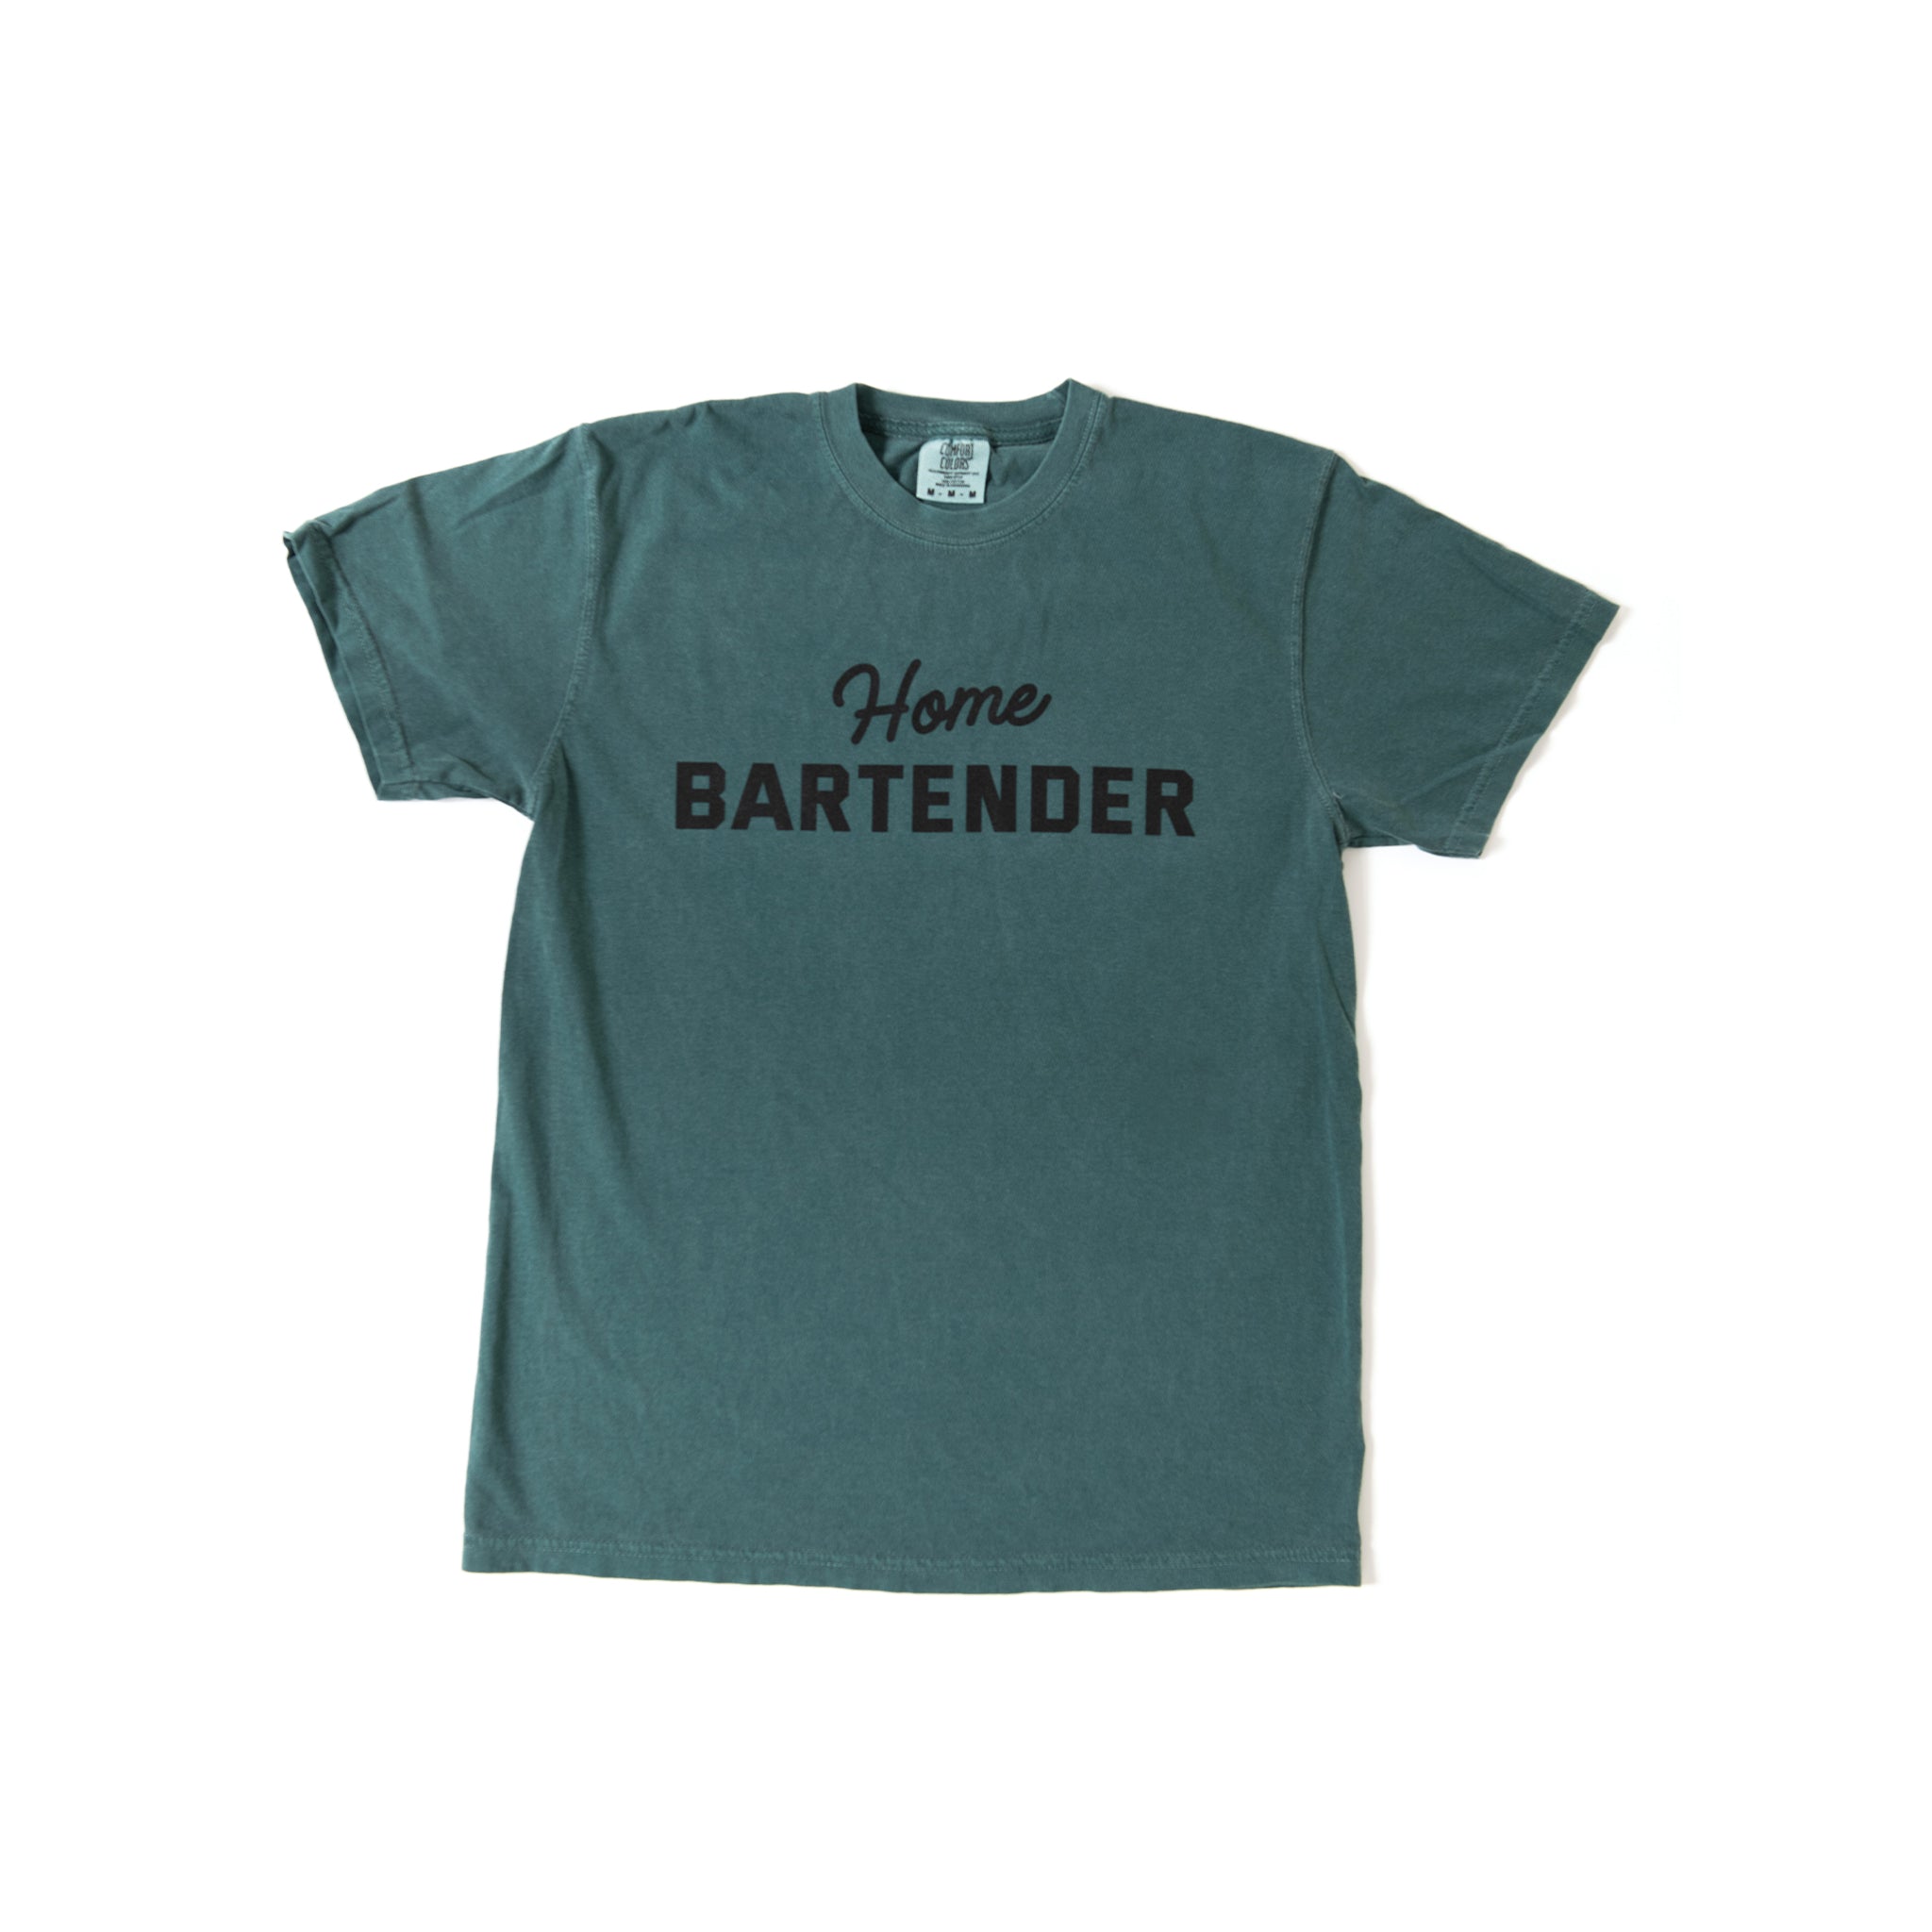 Home Bartender T-shirt